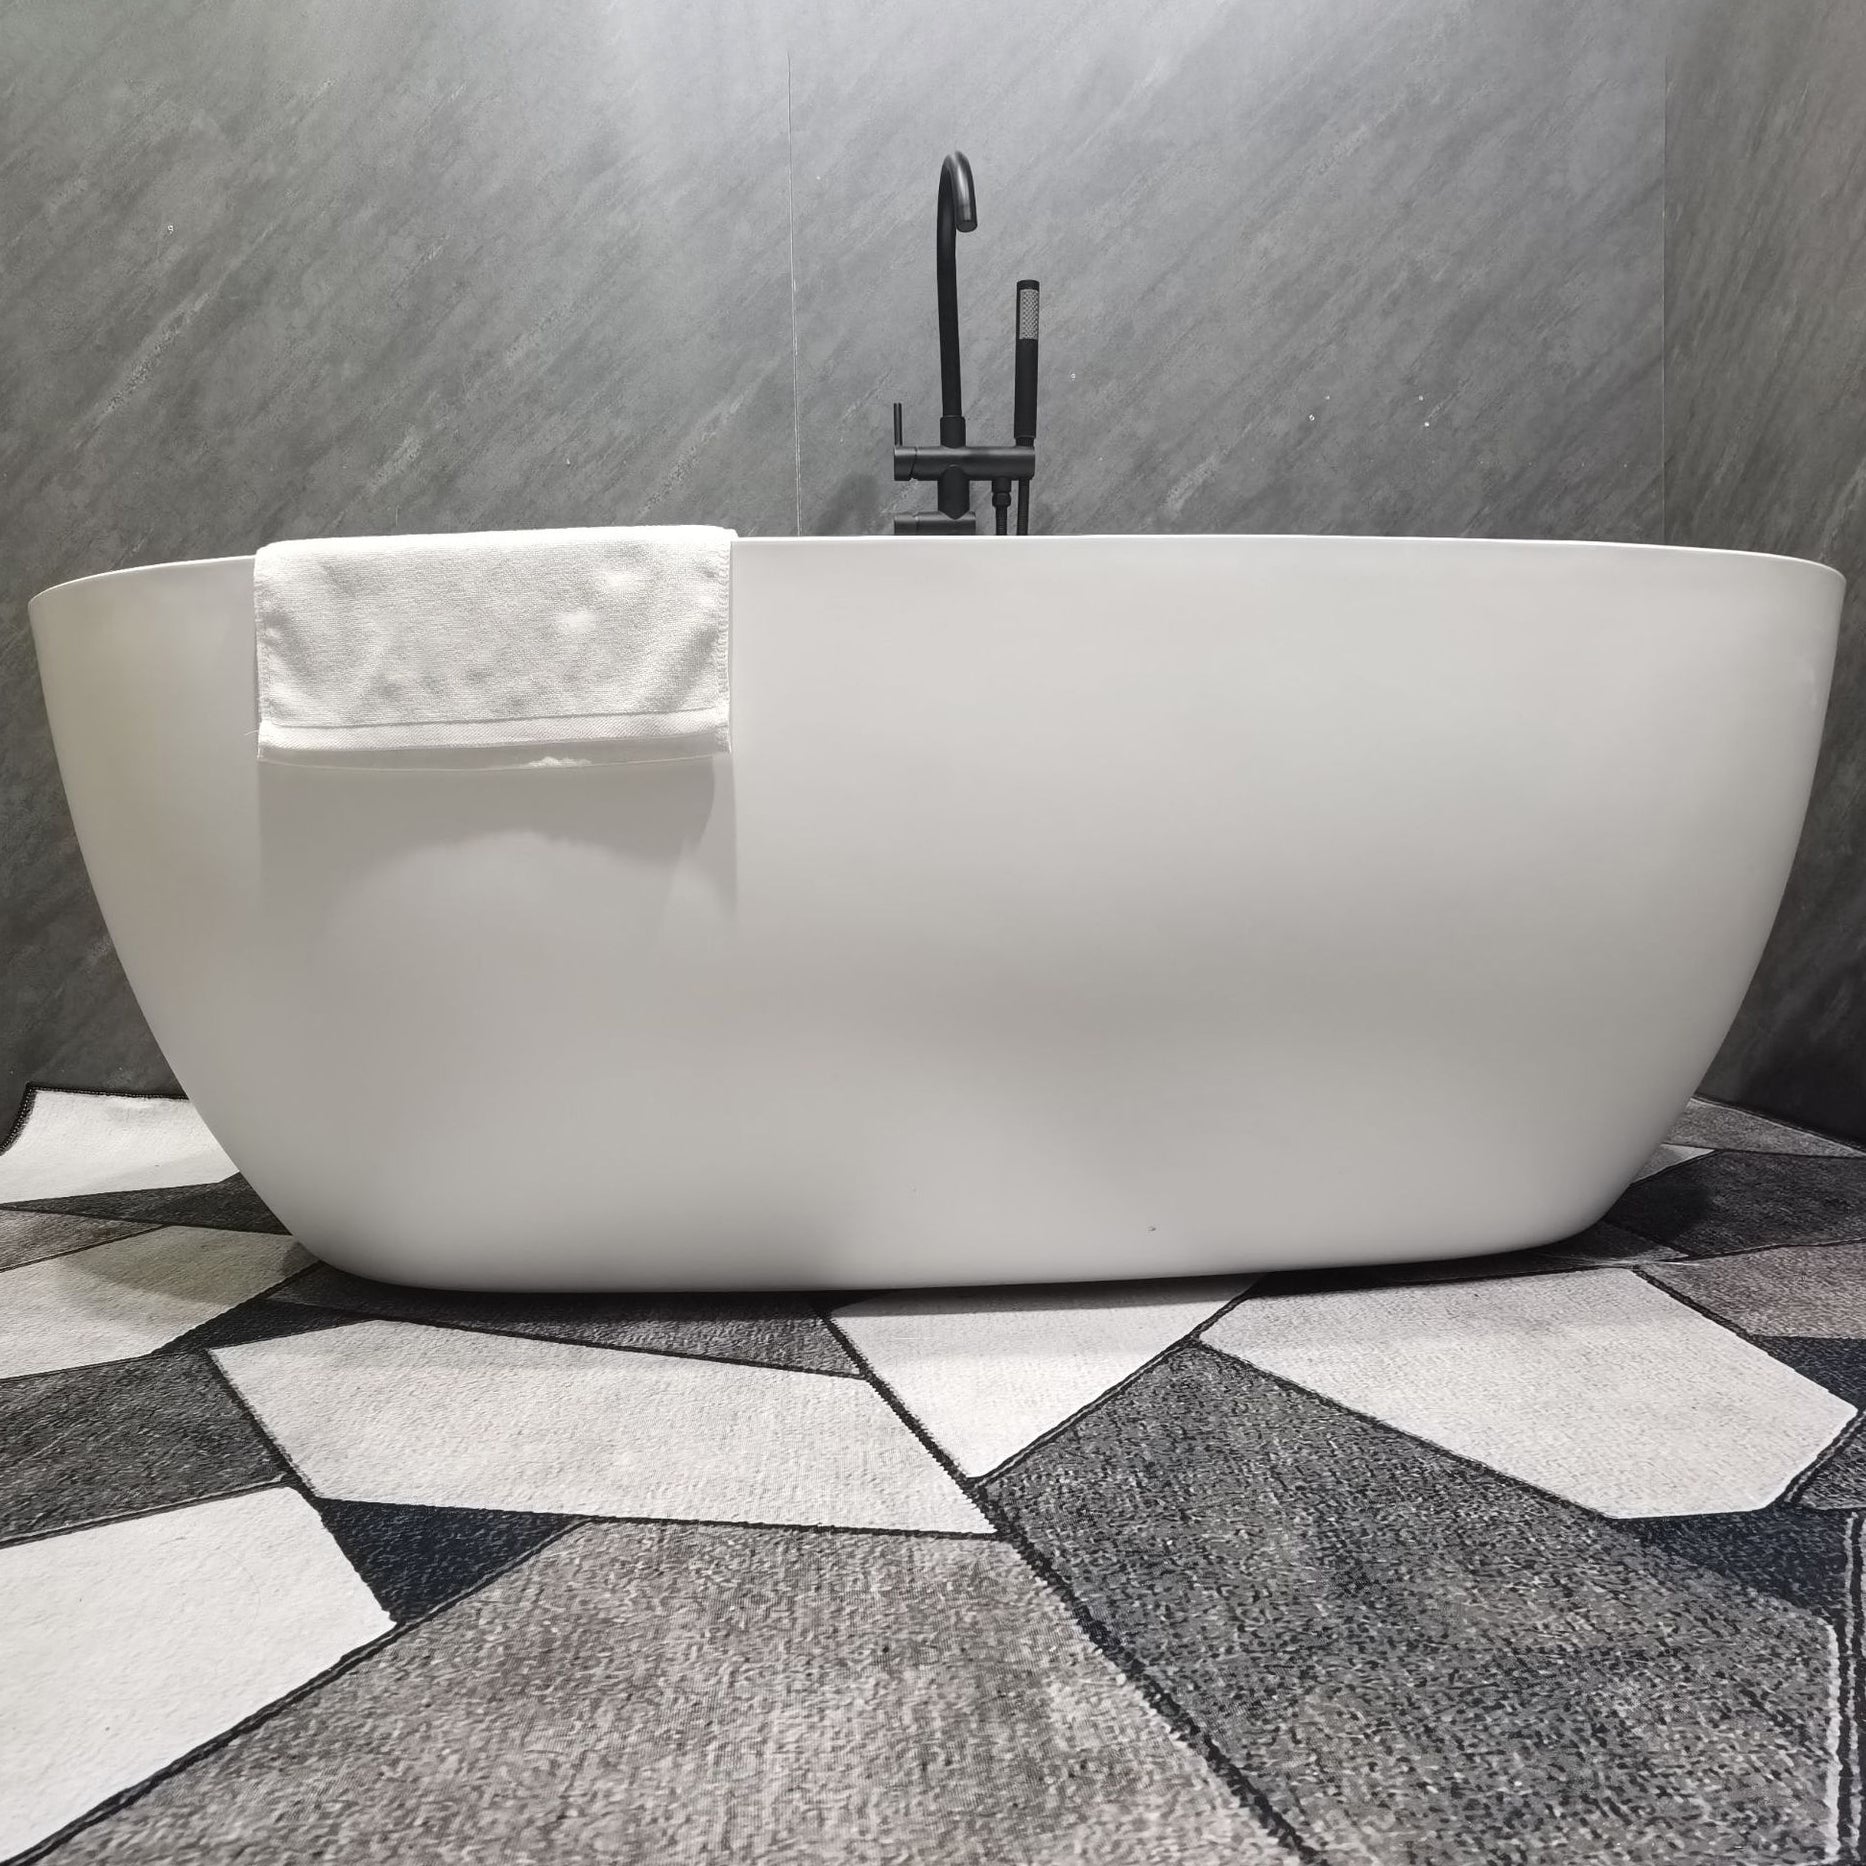 Acrylic Freestanding Soaking Bathtub Antique Finish Oval Modern Bath Tub